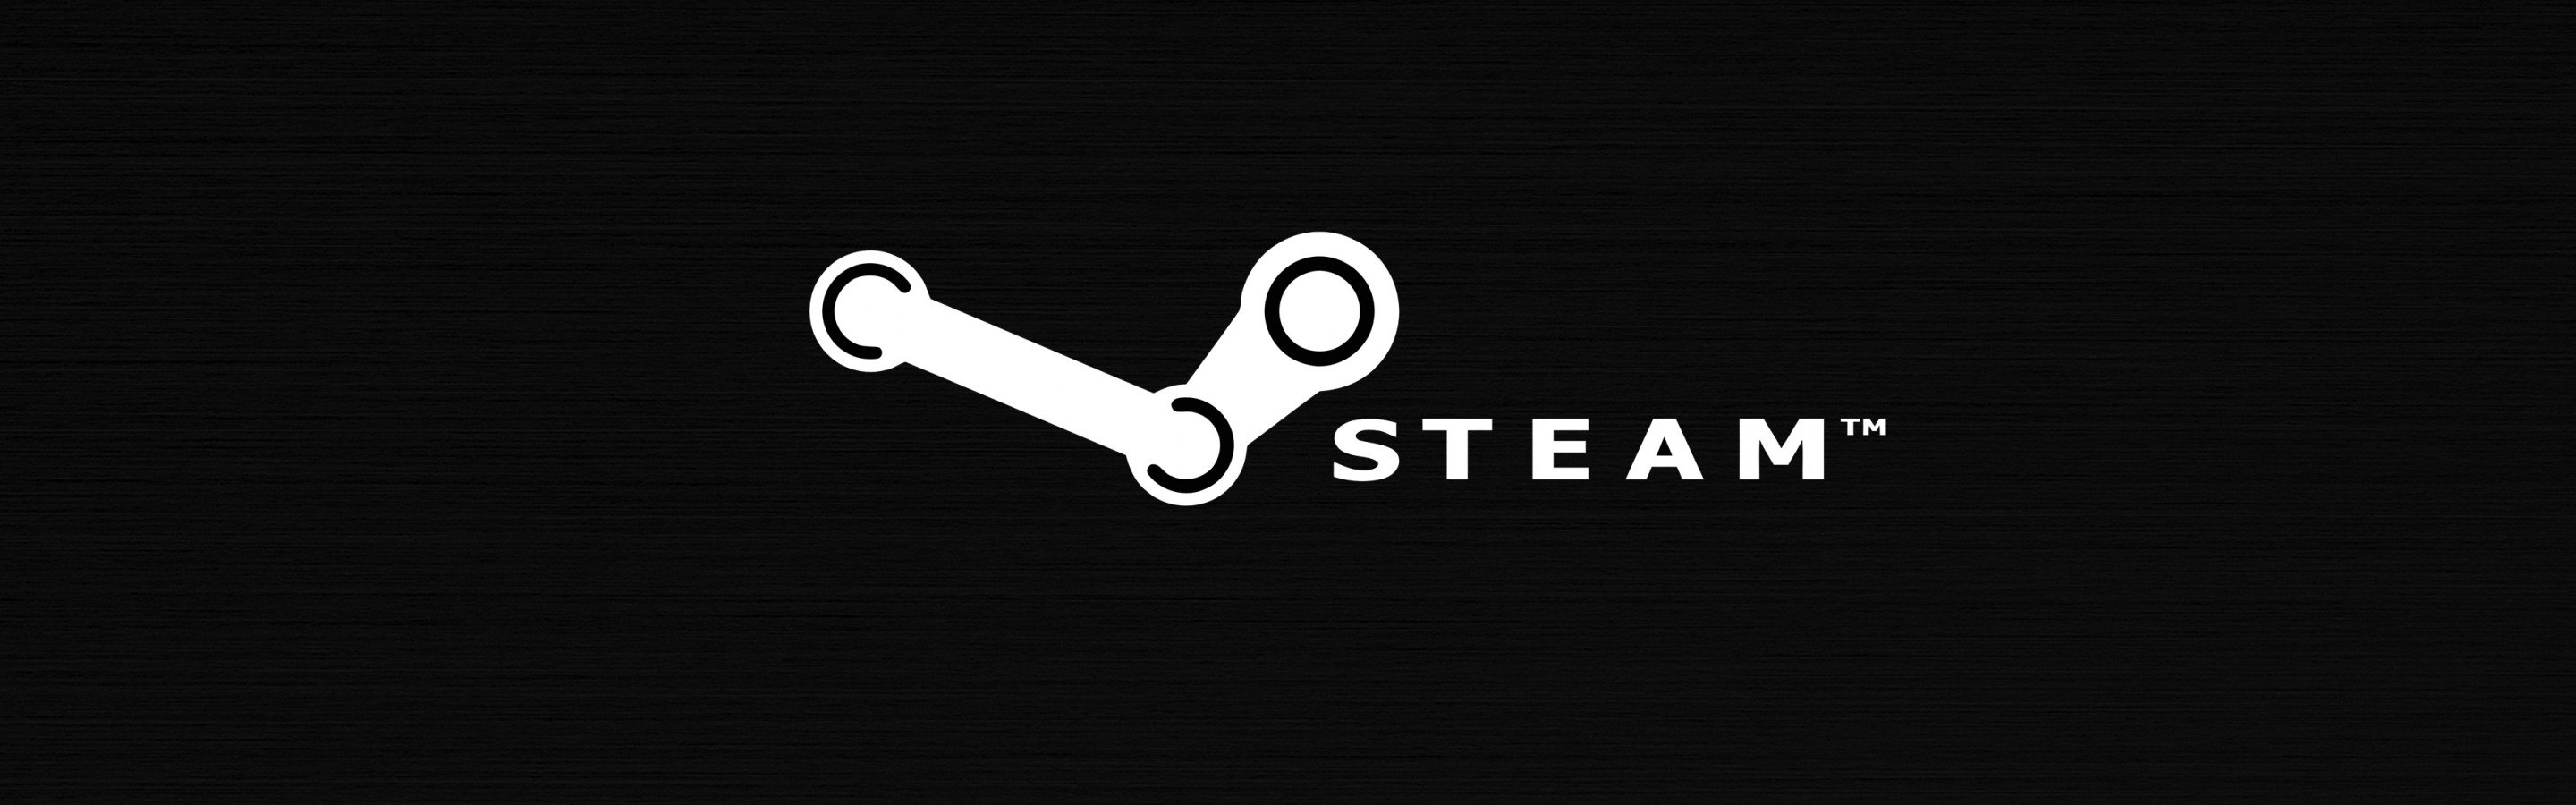 Steam не входит в сообщество фото 61